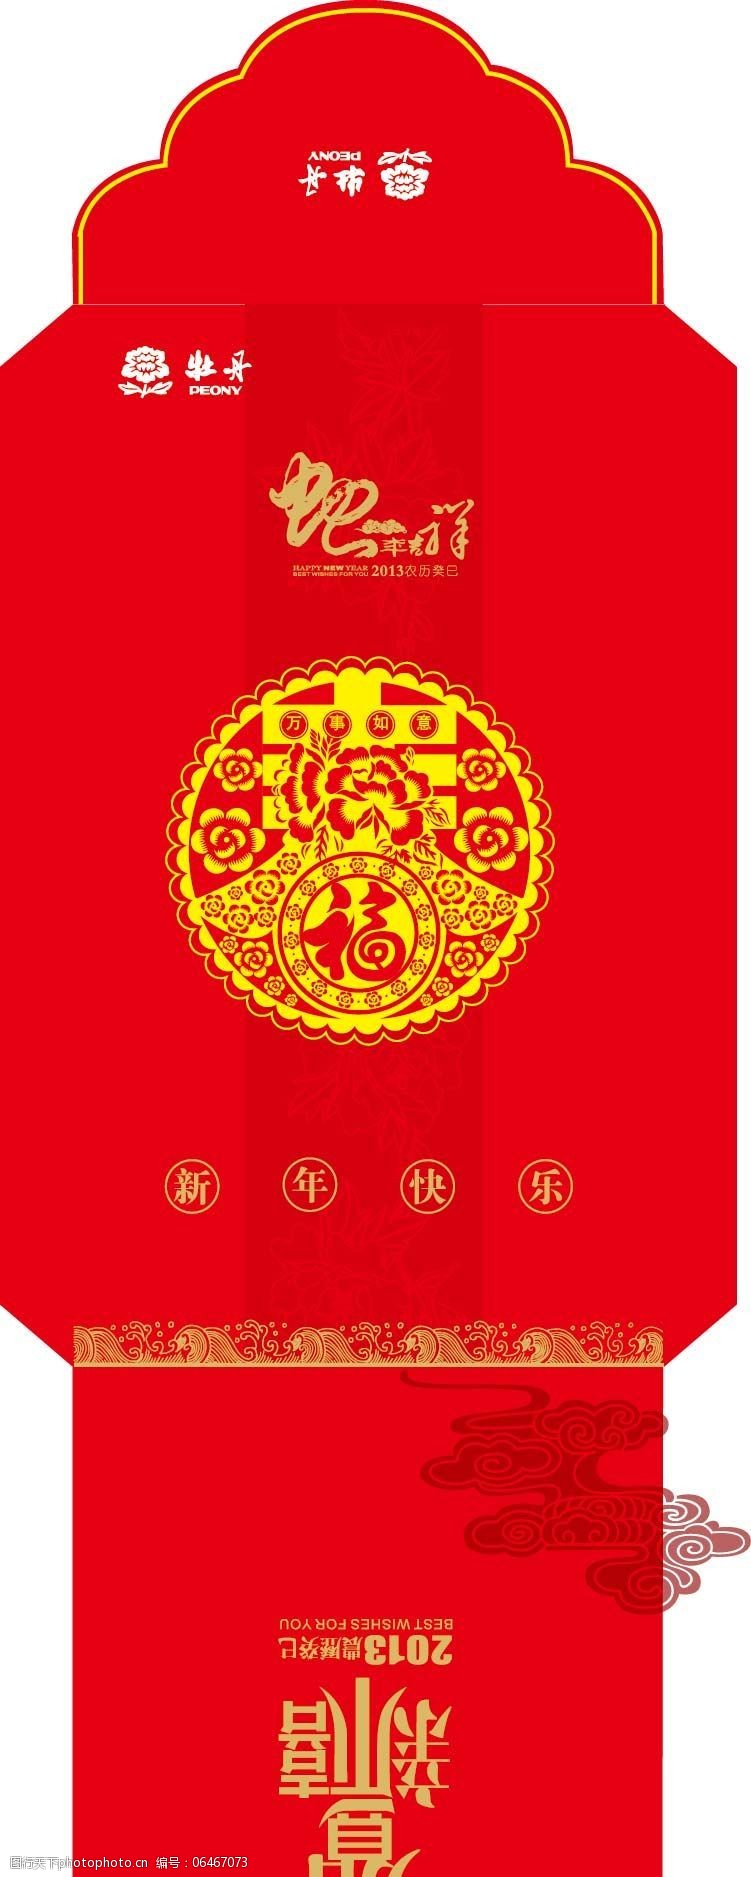 马年快乐牡丹集团红包设计